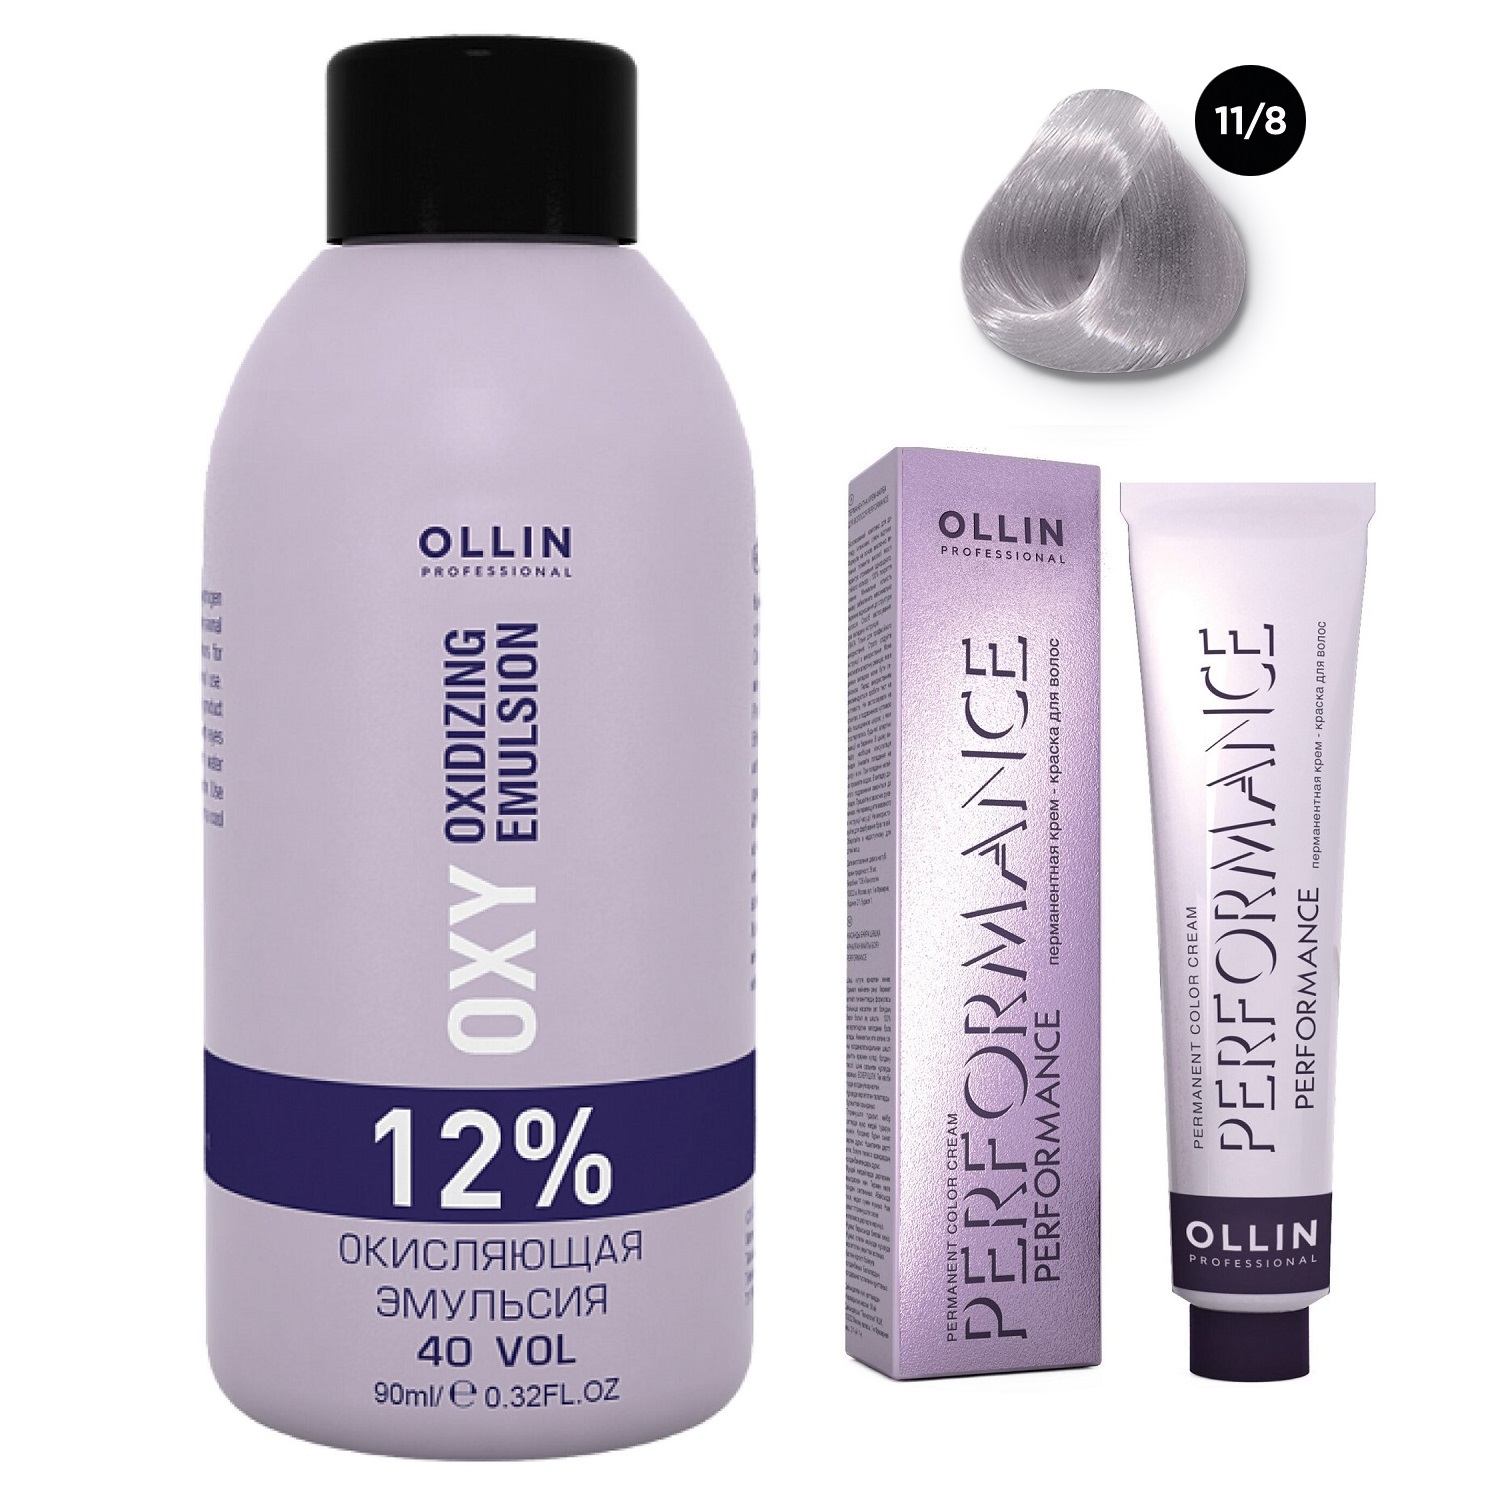 Купить Ollin Professional Набор Перманентная крем-краска для волос Ollin Color оттенок 11/8 специальный блондин жемчужный 60 мл + Окисляющая эмульсия Oxy 12% 90 мл (Ollin Professional, Performance), Россия